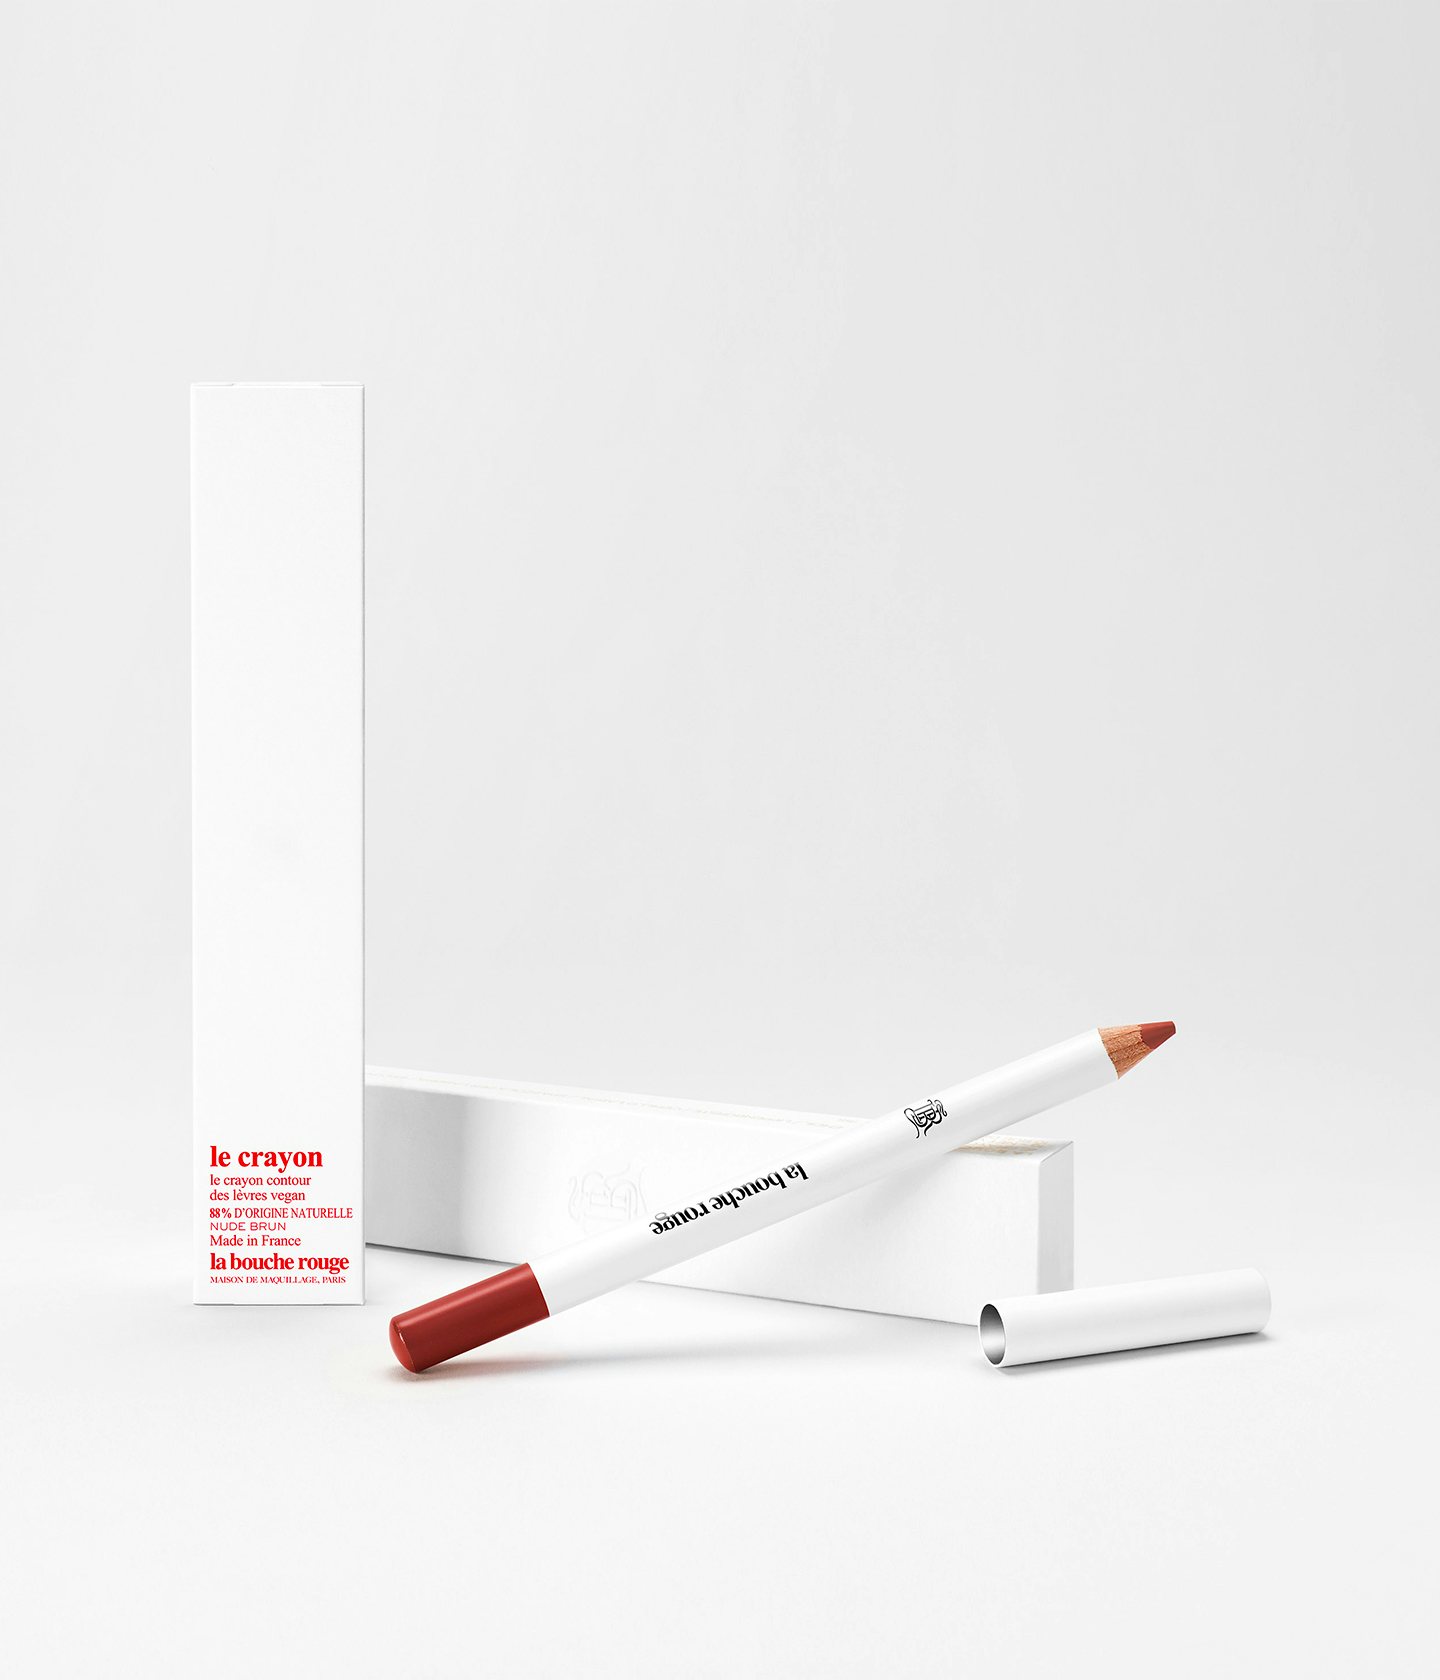 La bouche rouge Nude Brown lip pencil with the white box